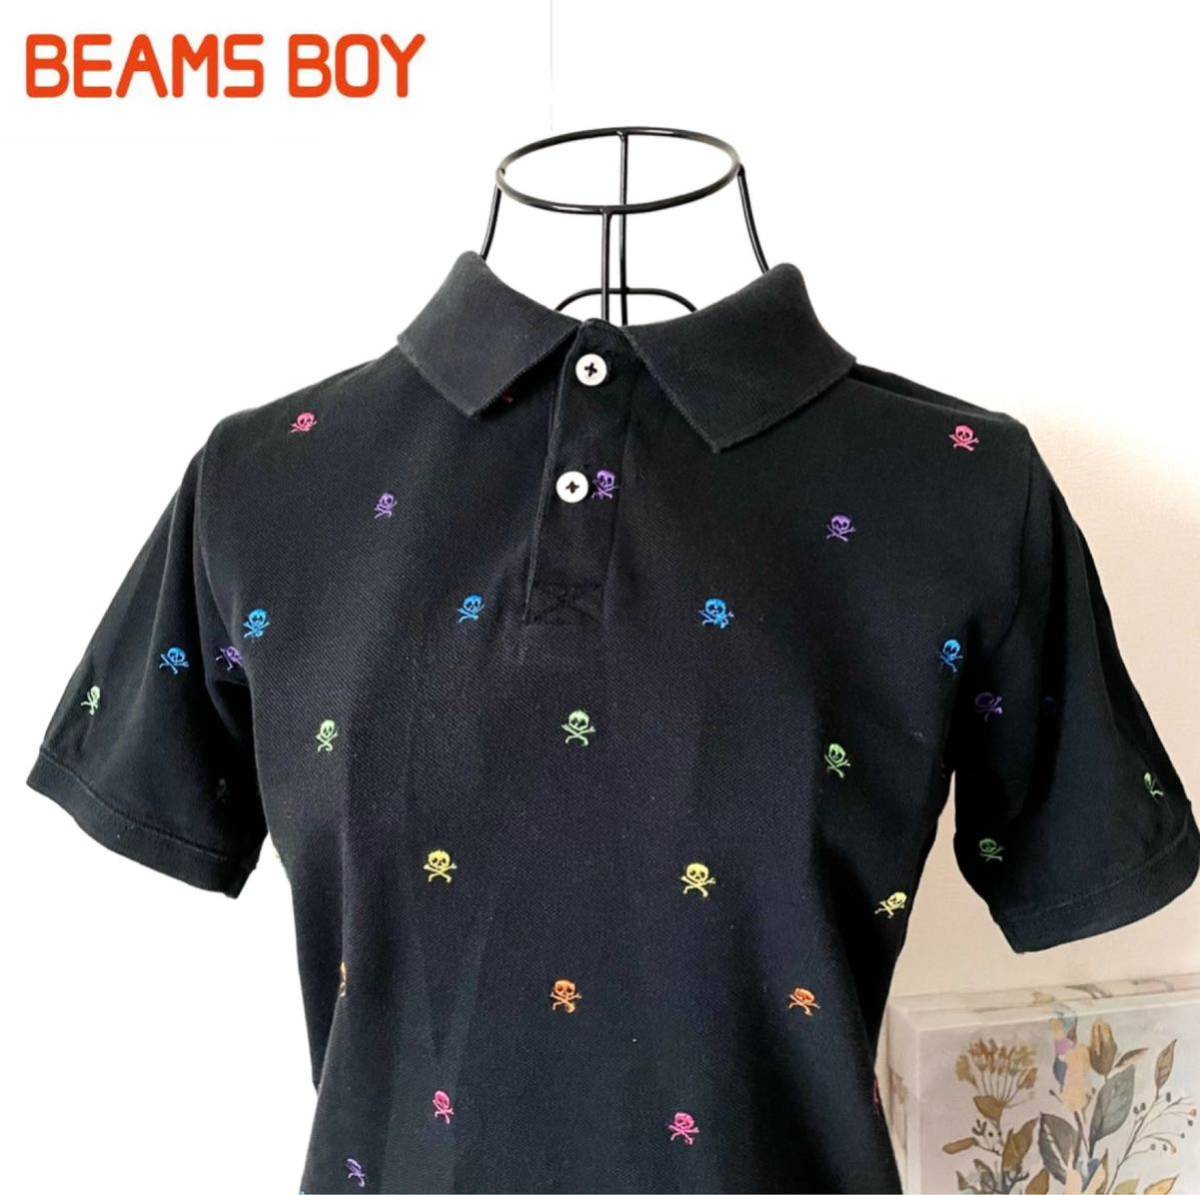 beams boy Beams Boy polo-shirt total pattern short sleeves skull gaikotsu Skull Golf wear cotton colorful black black T-shirt cut and sewn 